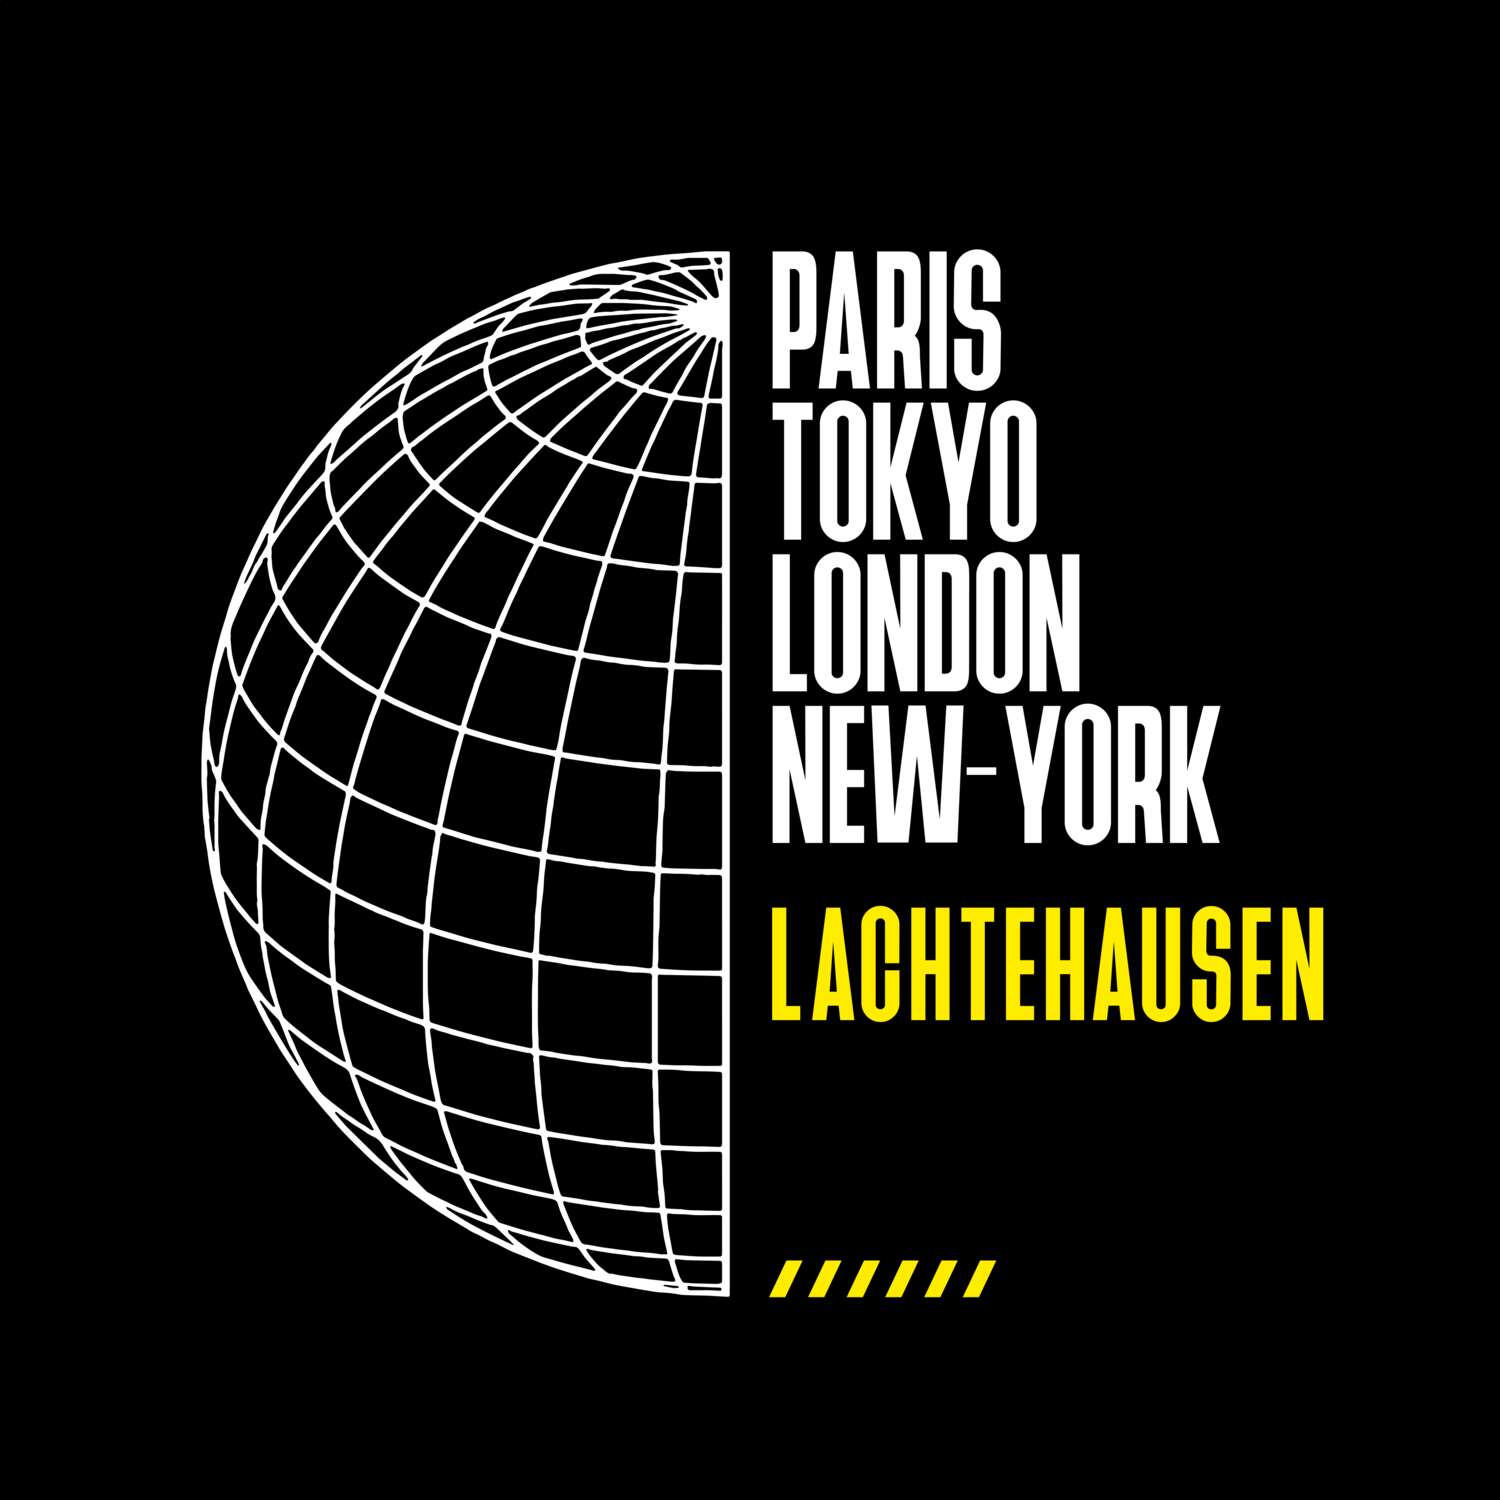 Lachtehausen T-Shirt »Paris Tokyo London«